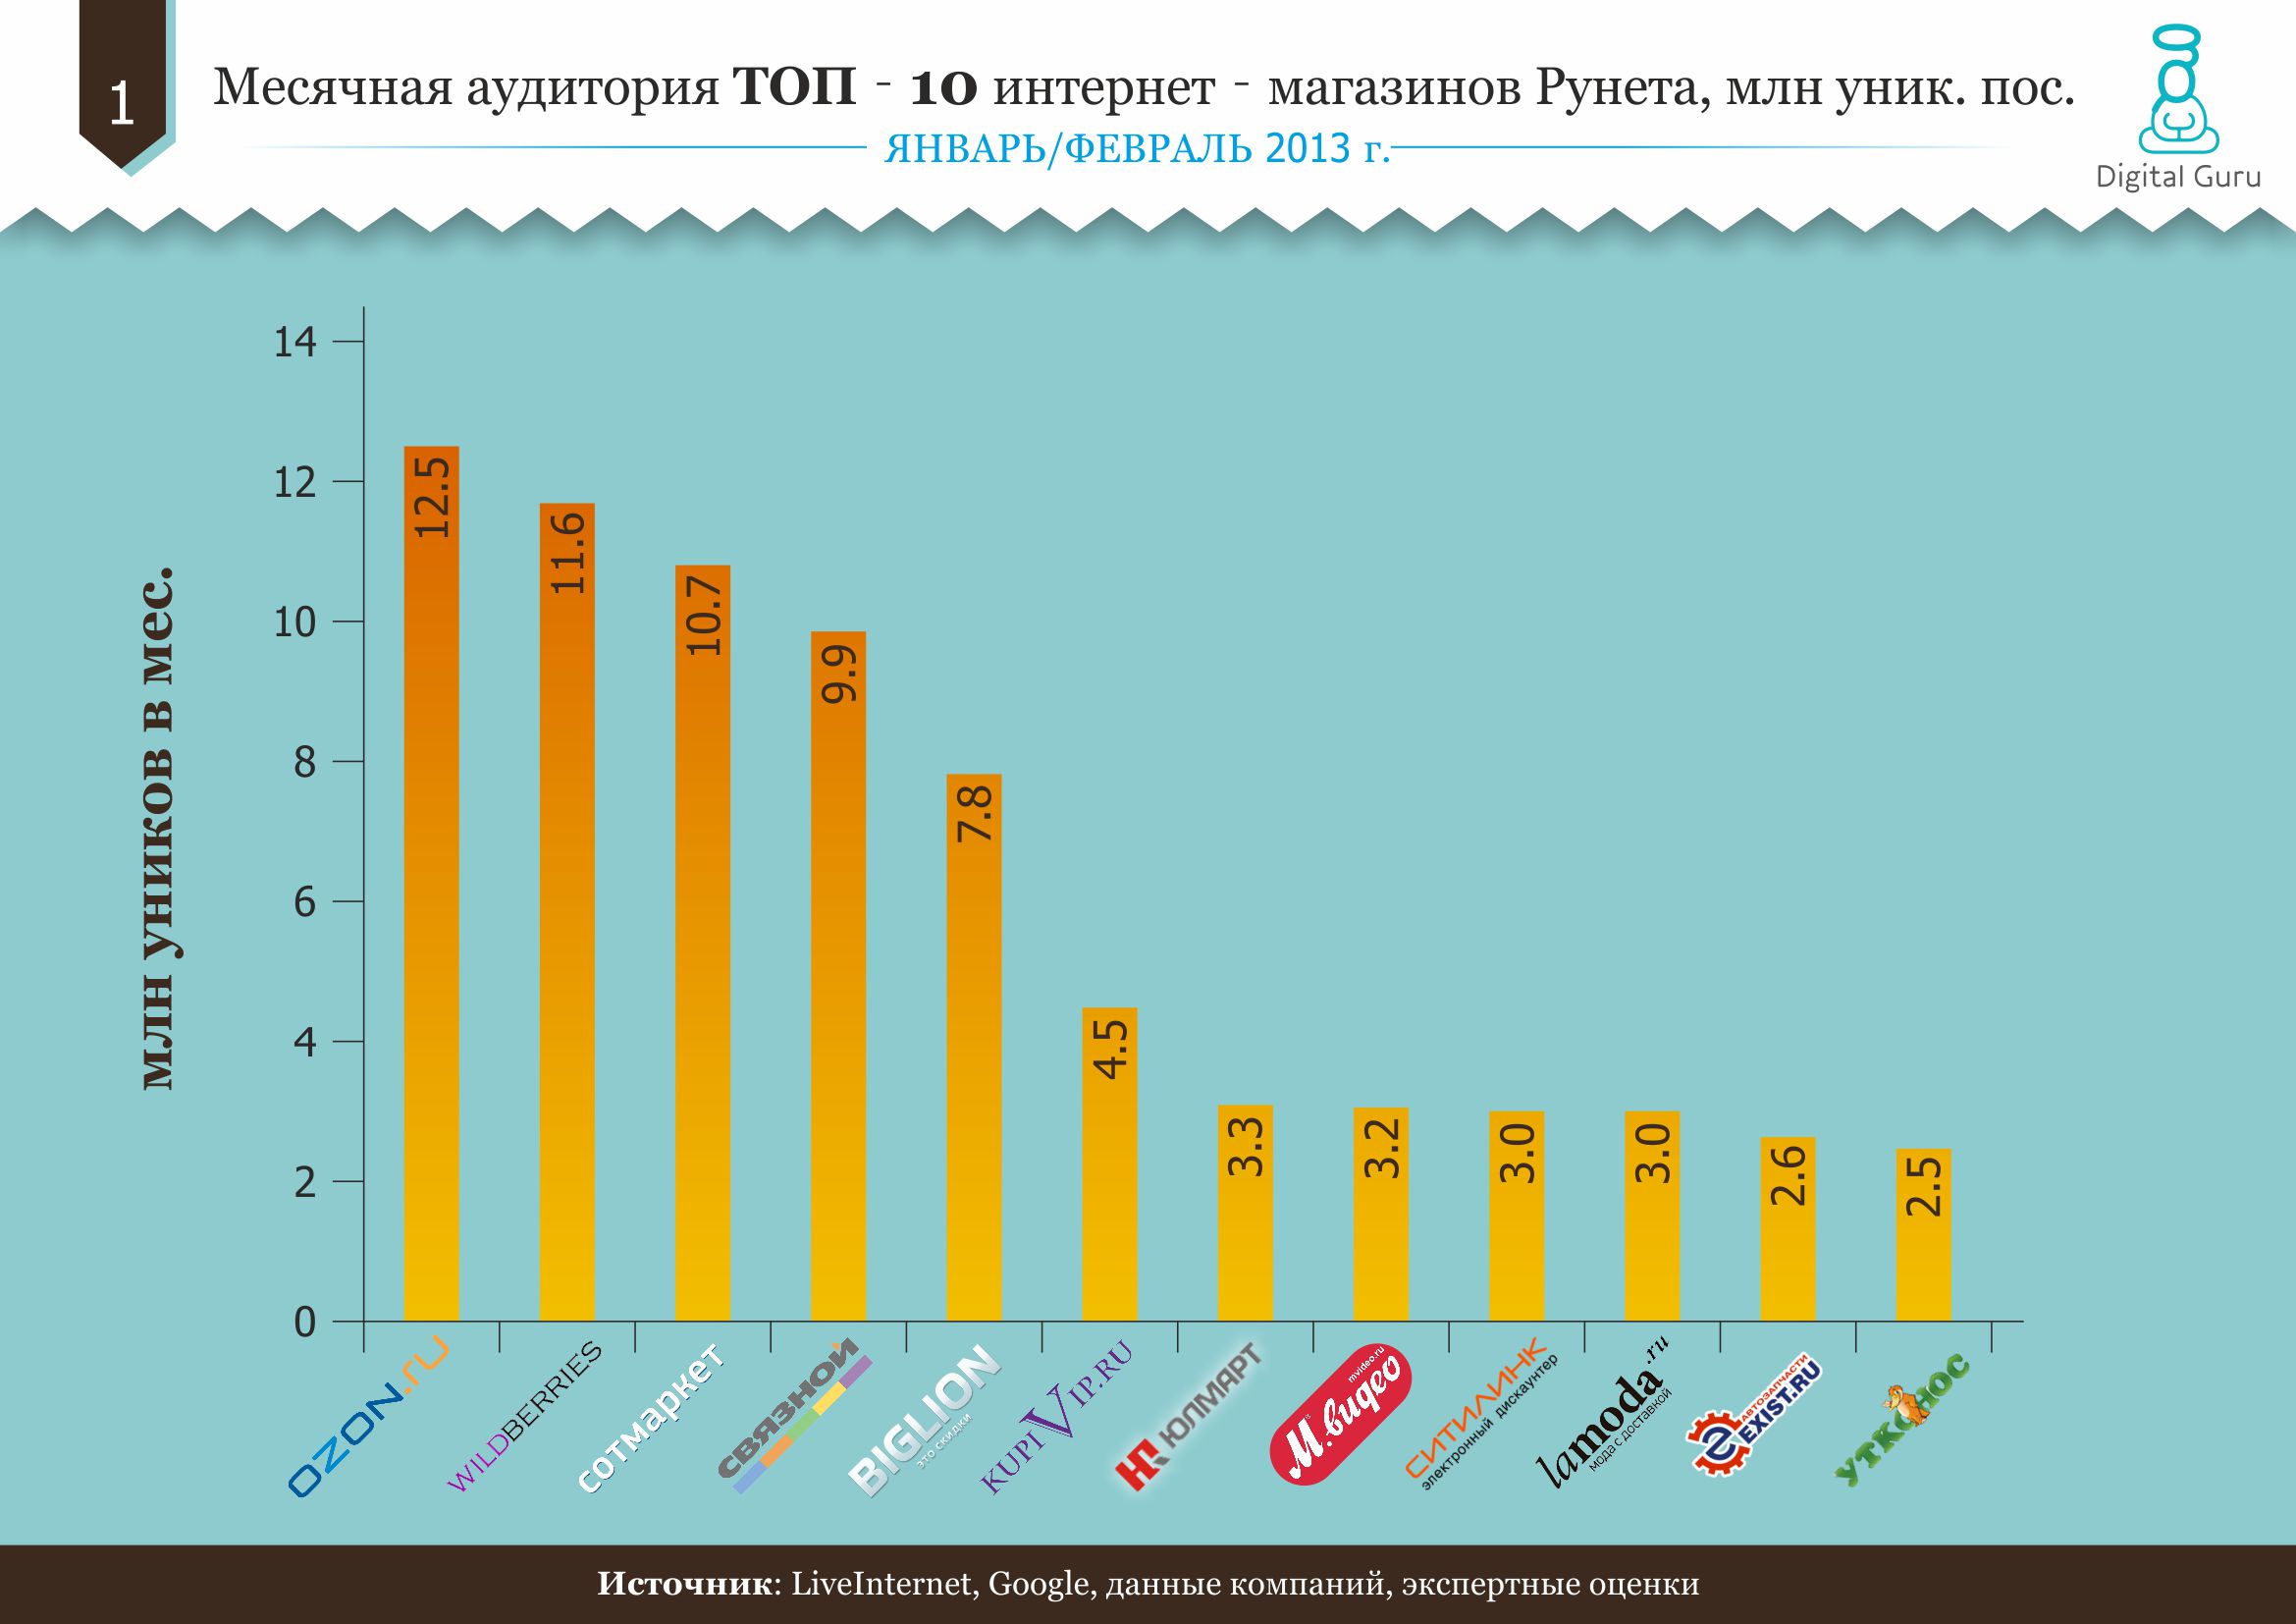 Топ-10 интернет-магазинов рунета: итоги 2012 года